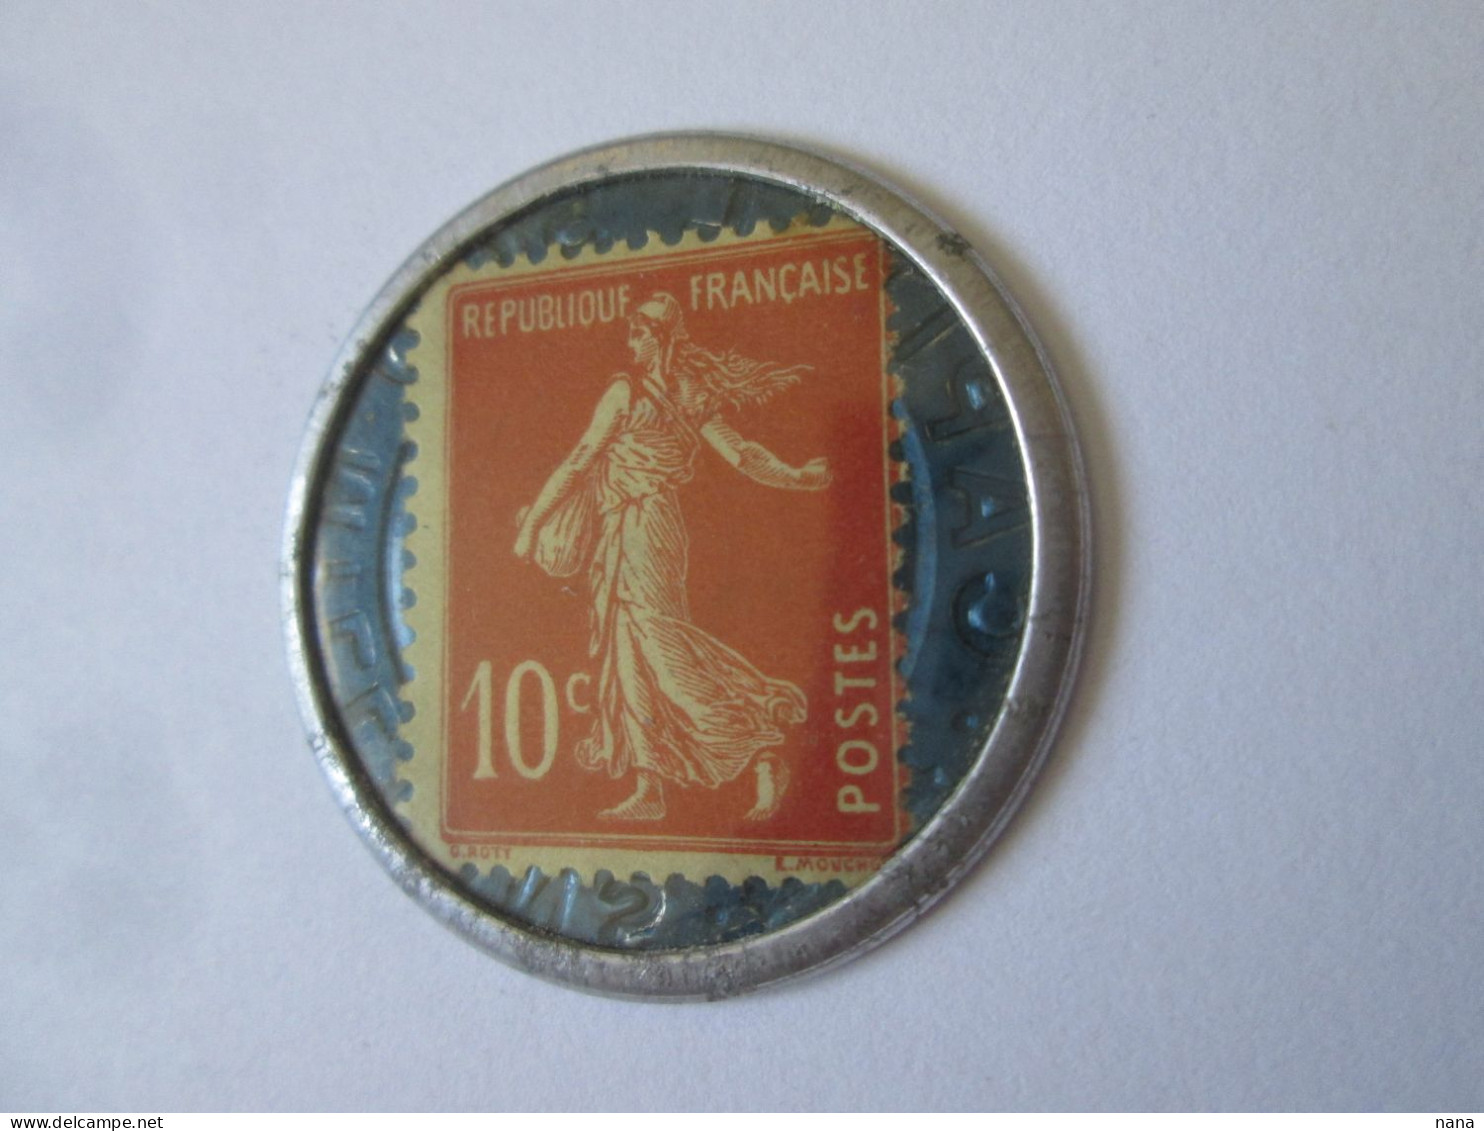 France:Timbre Monnaie 10 Centimes Societe Generale Neuf Vers 1920/Societe Generale 10 Centimes UNC Coin Stamp 1920s - Bons & Nécessité